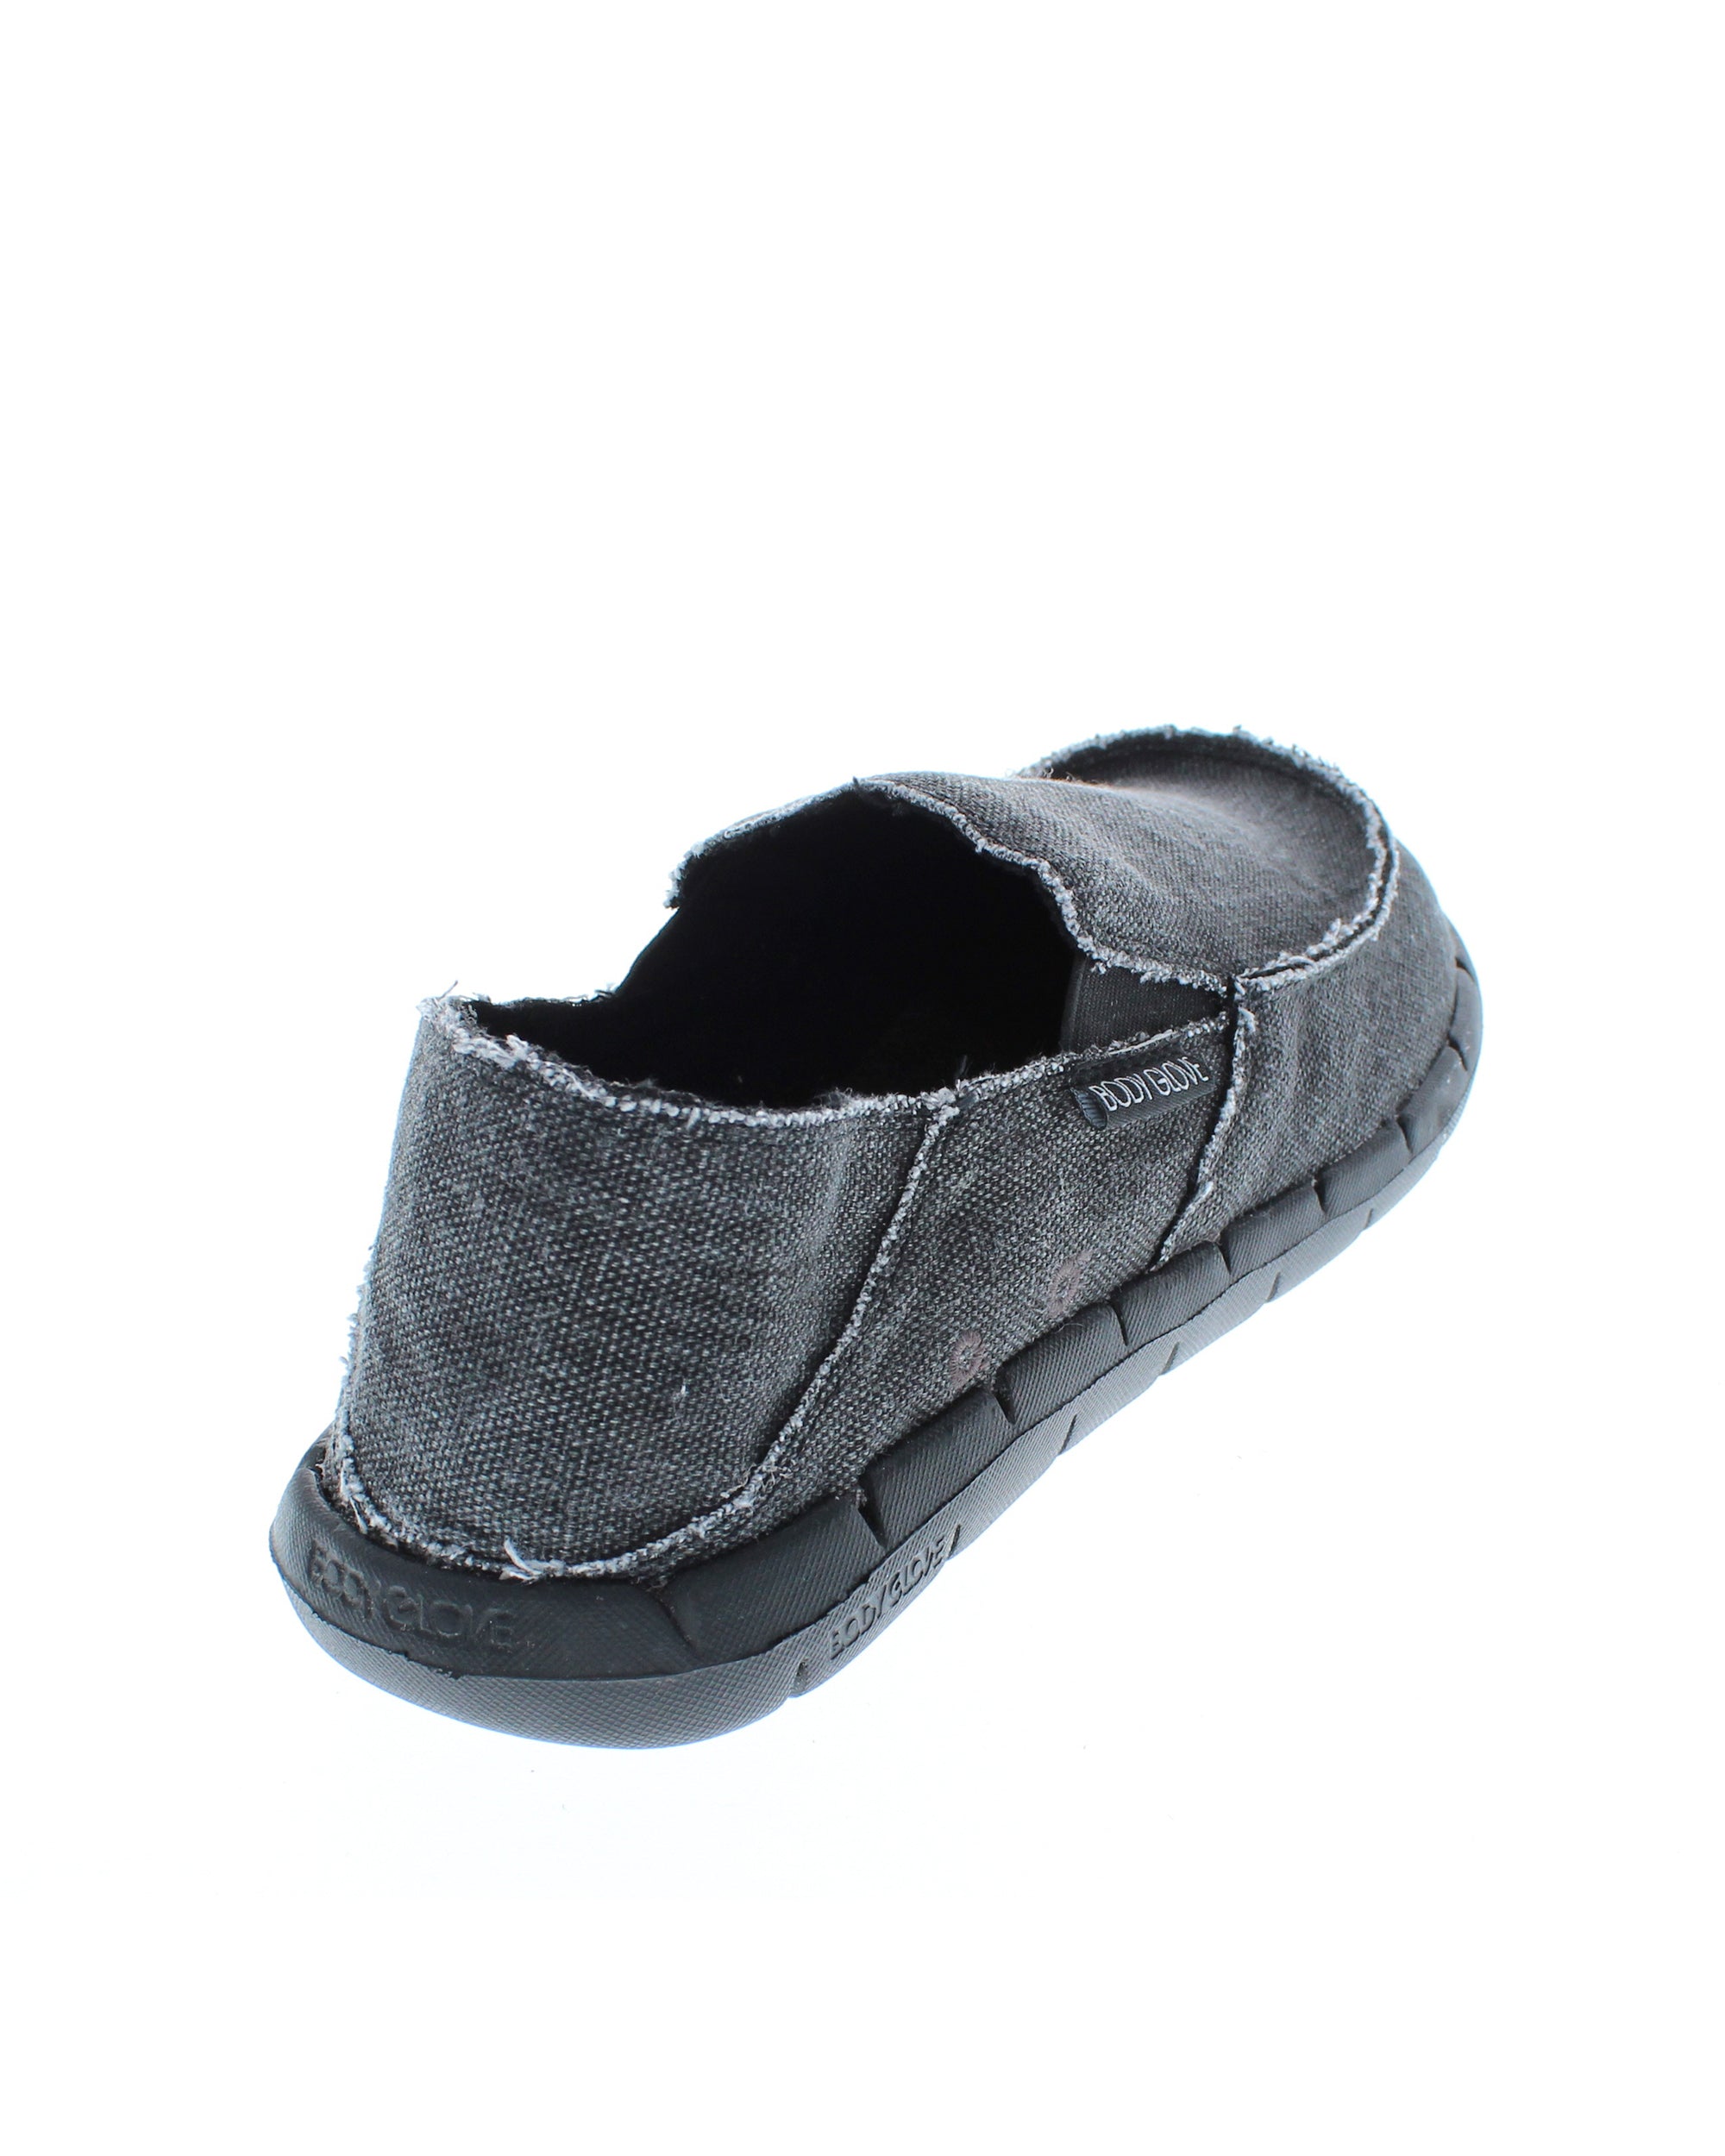 Men's Islander Slip-On Sneakers - Black 